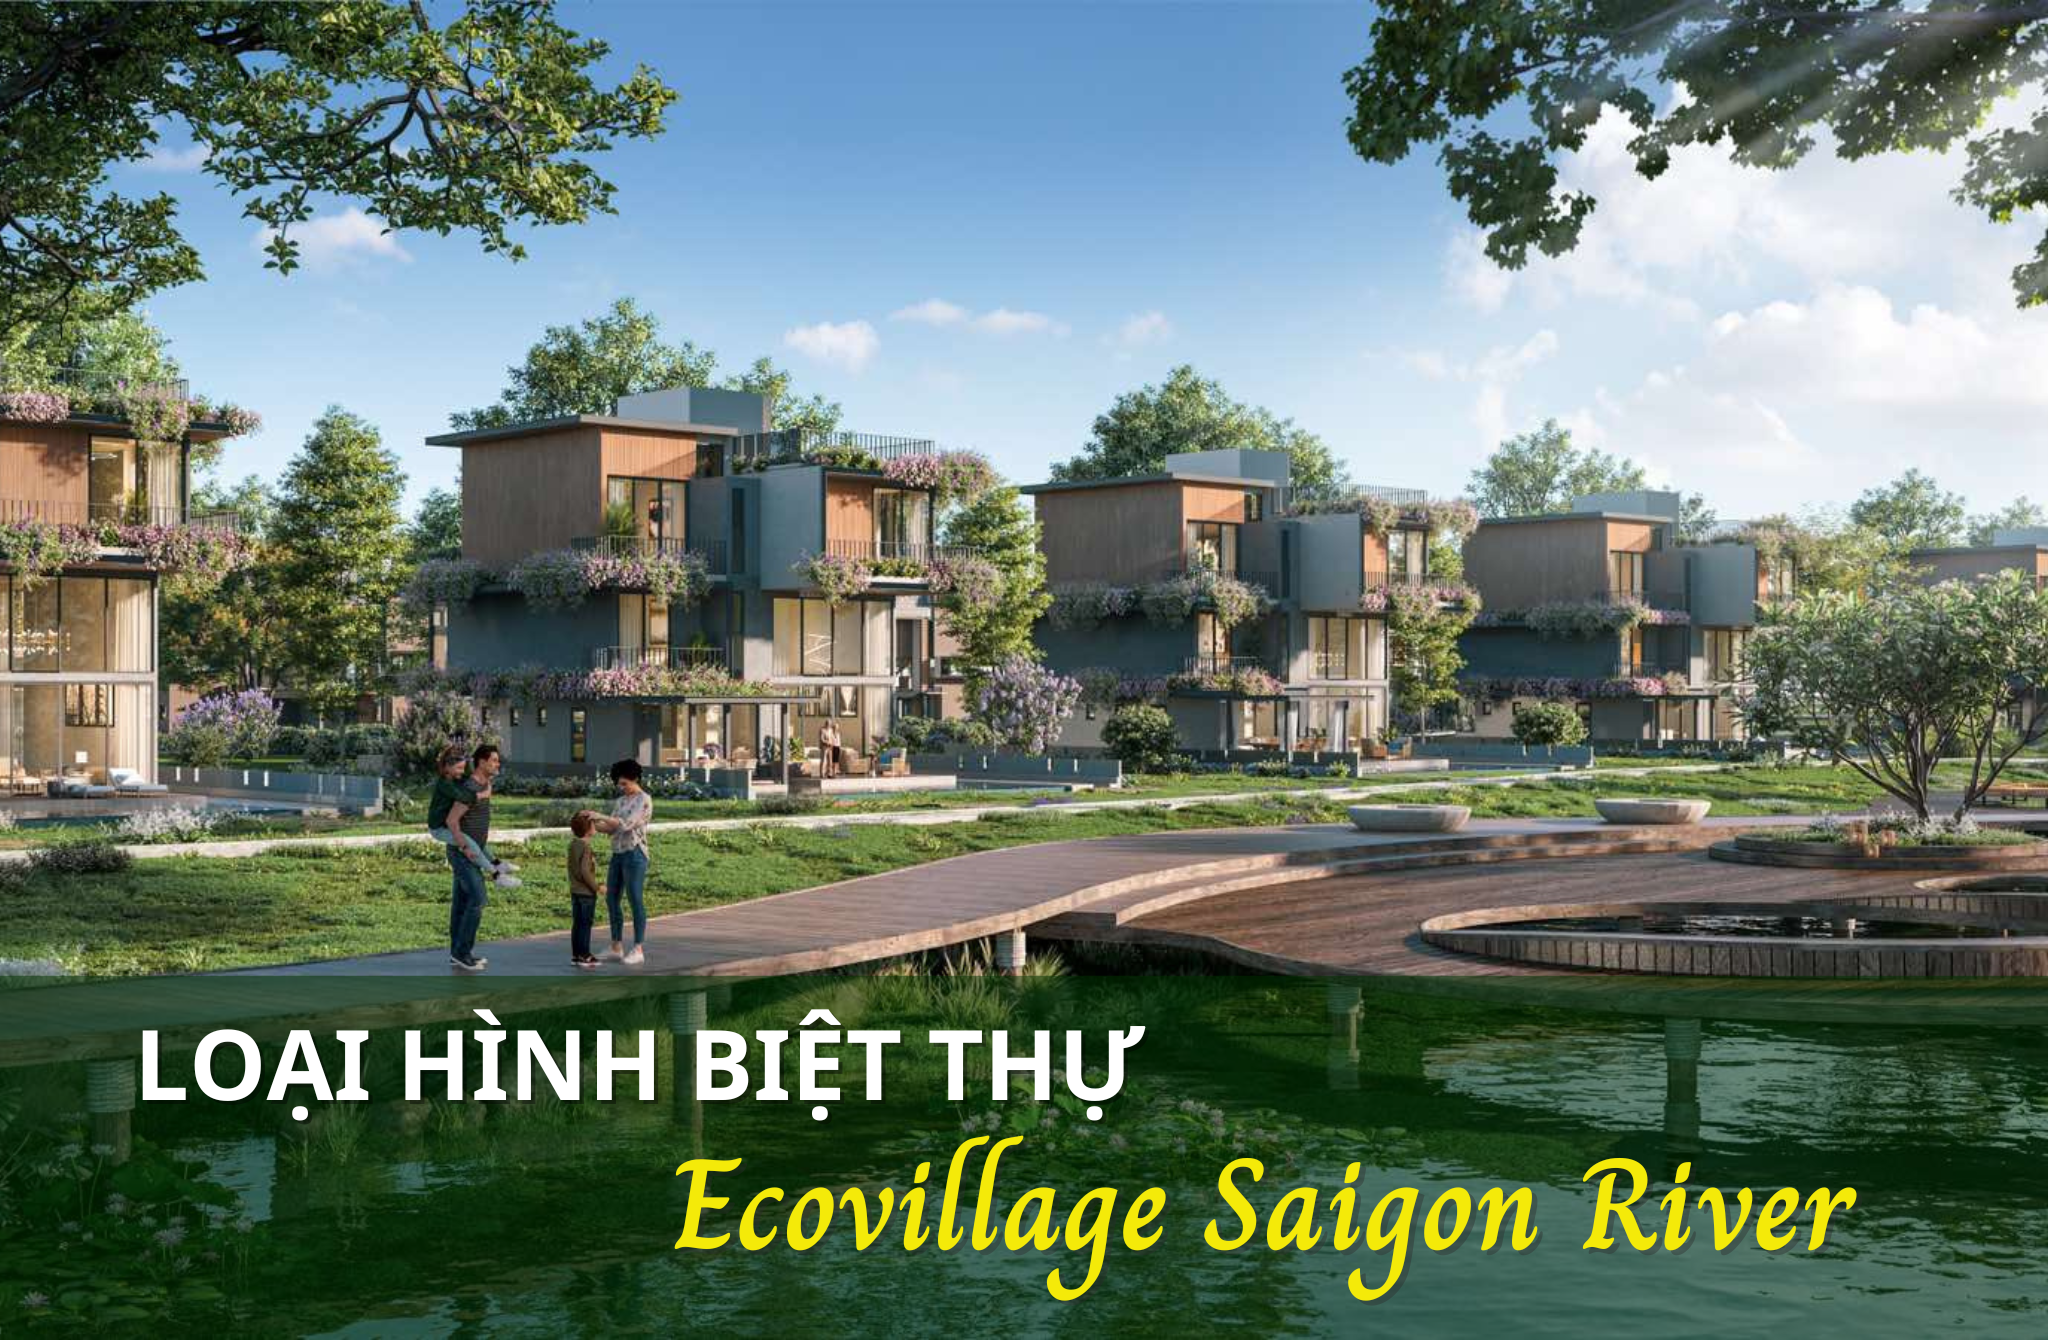 Khám phá các loại hình biệt thự tại Ecovillage Saigon River